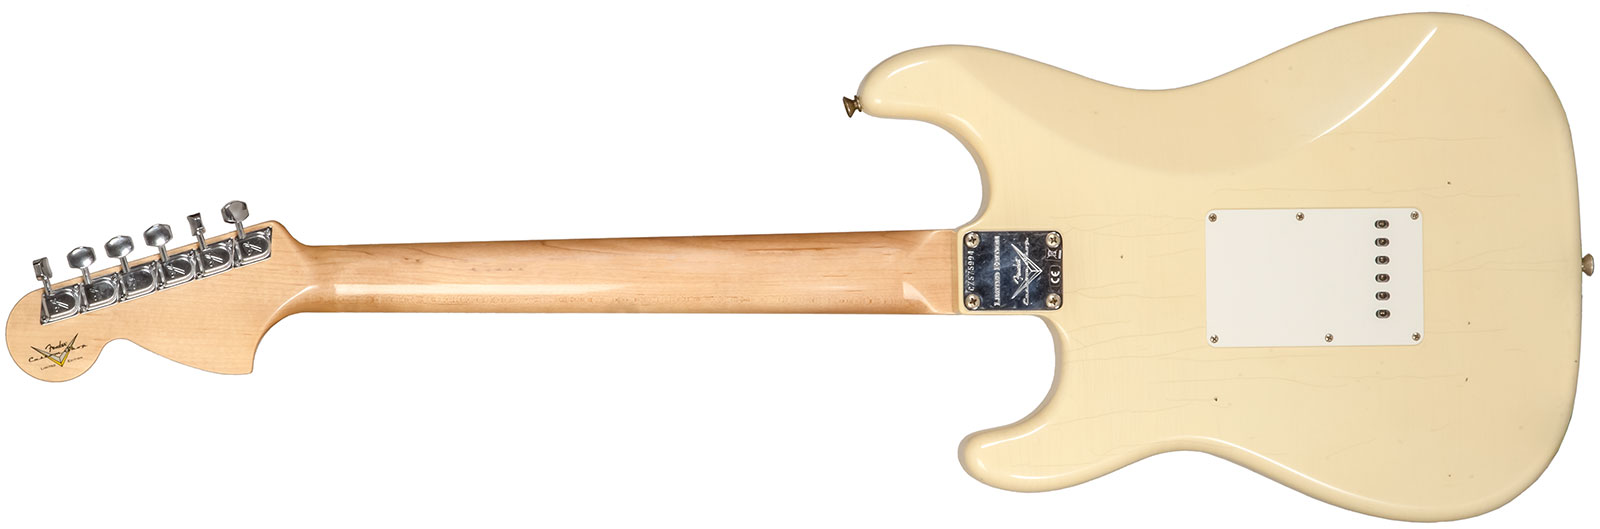 Fender Custom Shop Strat 1969 3s Trem Mn #cz576216 - Journeyman Relic Aged Vintage White - Elektrische gitaar in Str-vorm - Variation 1